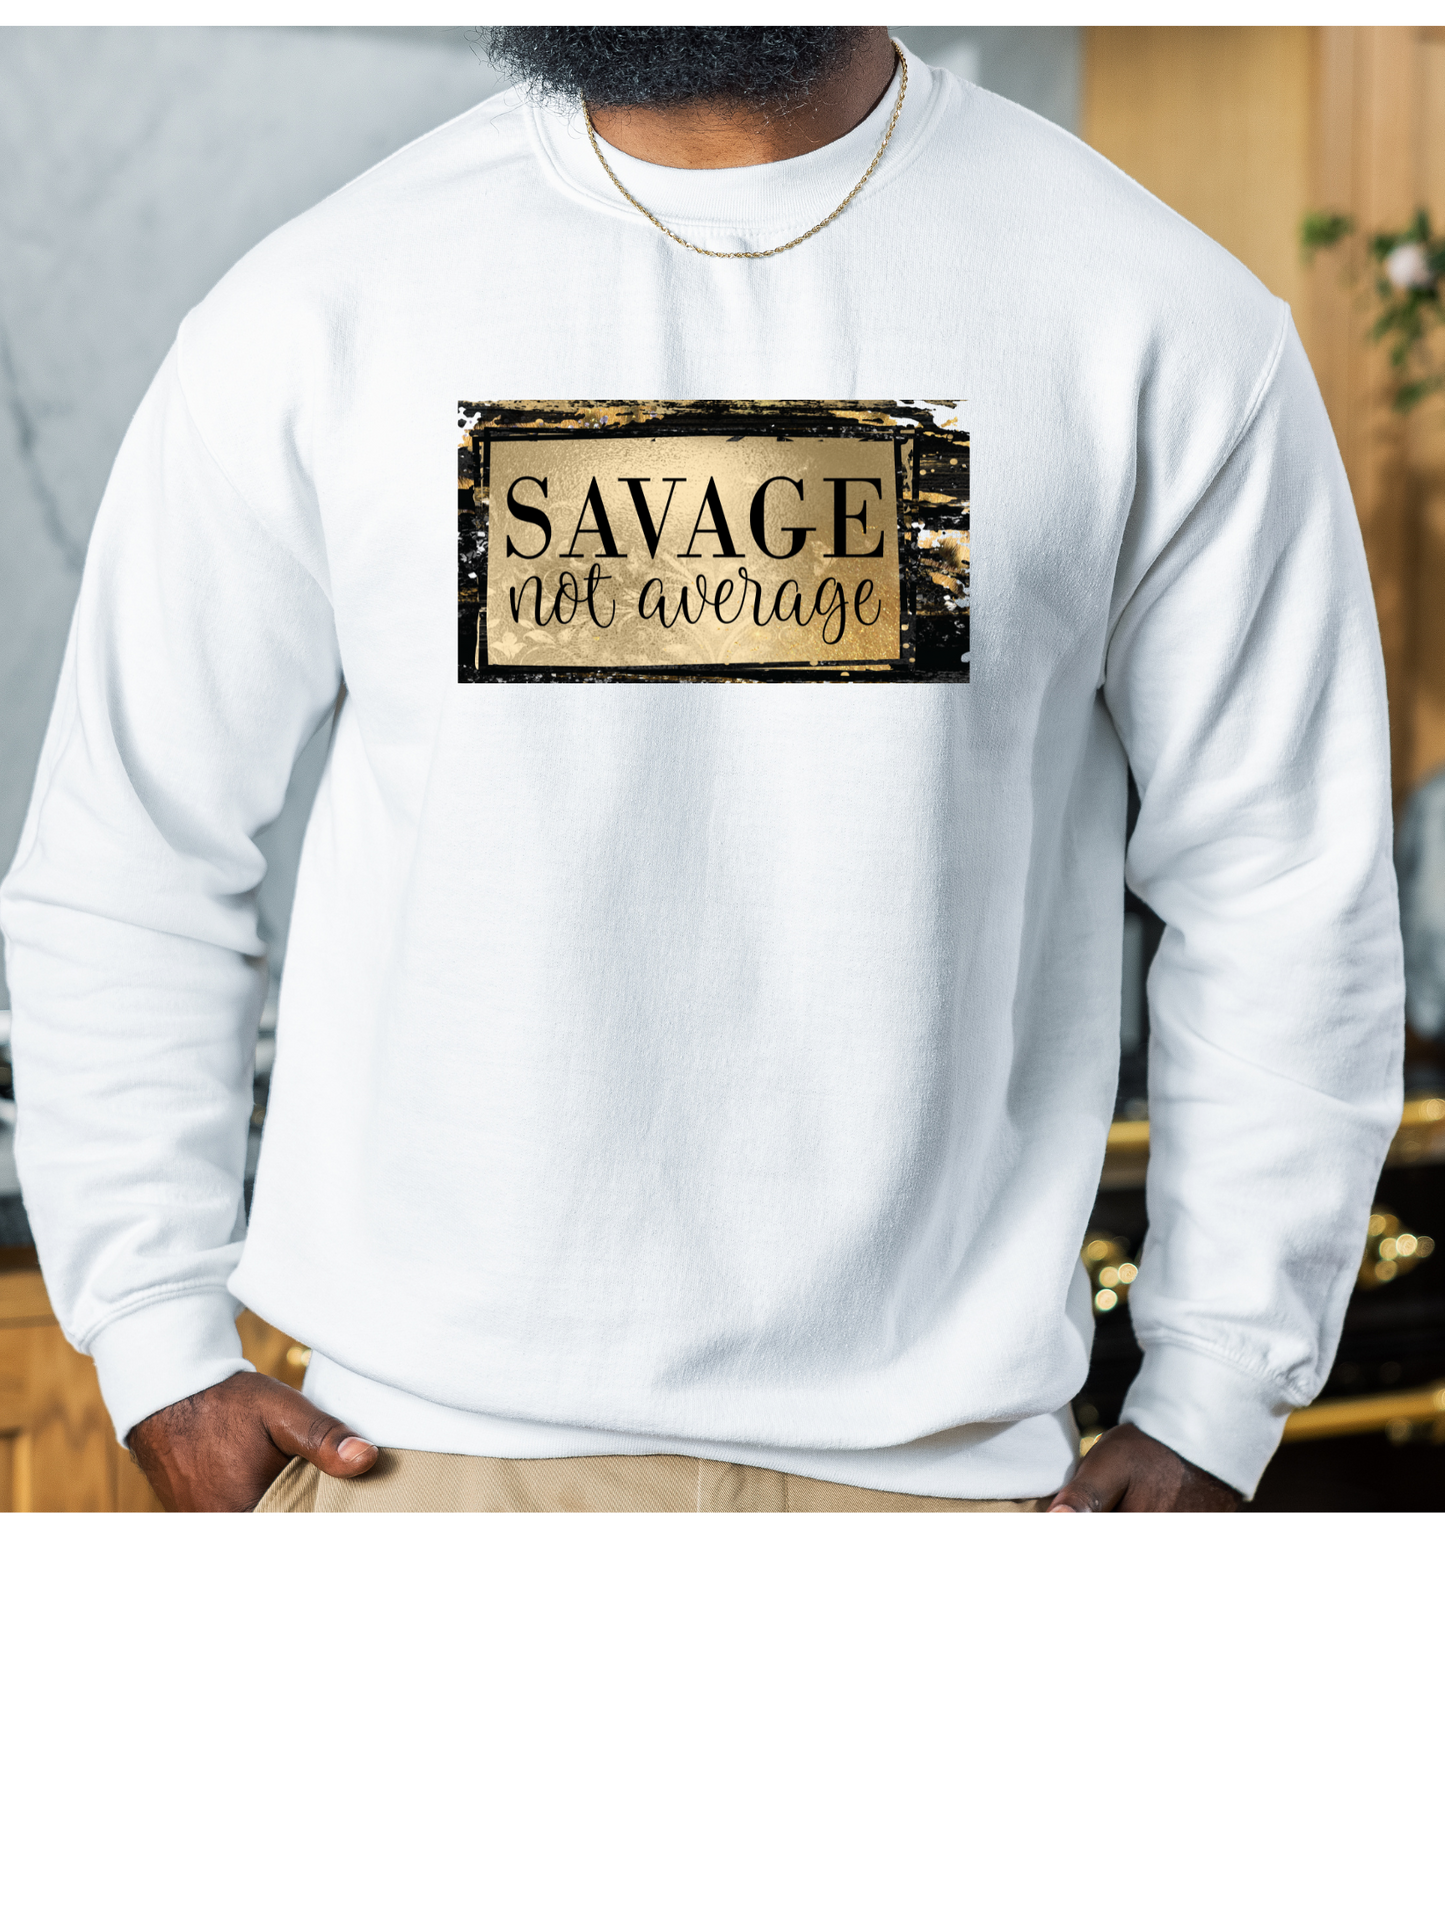 "Savage Not Average" Poetic-Vibes Unisex Crew Neck Sweater